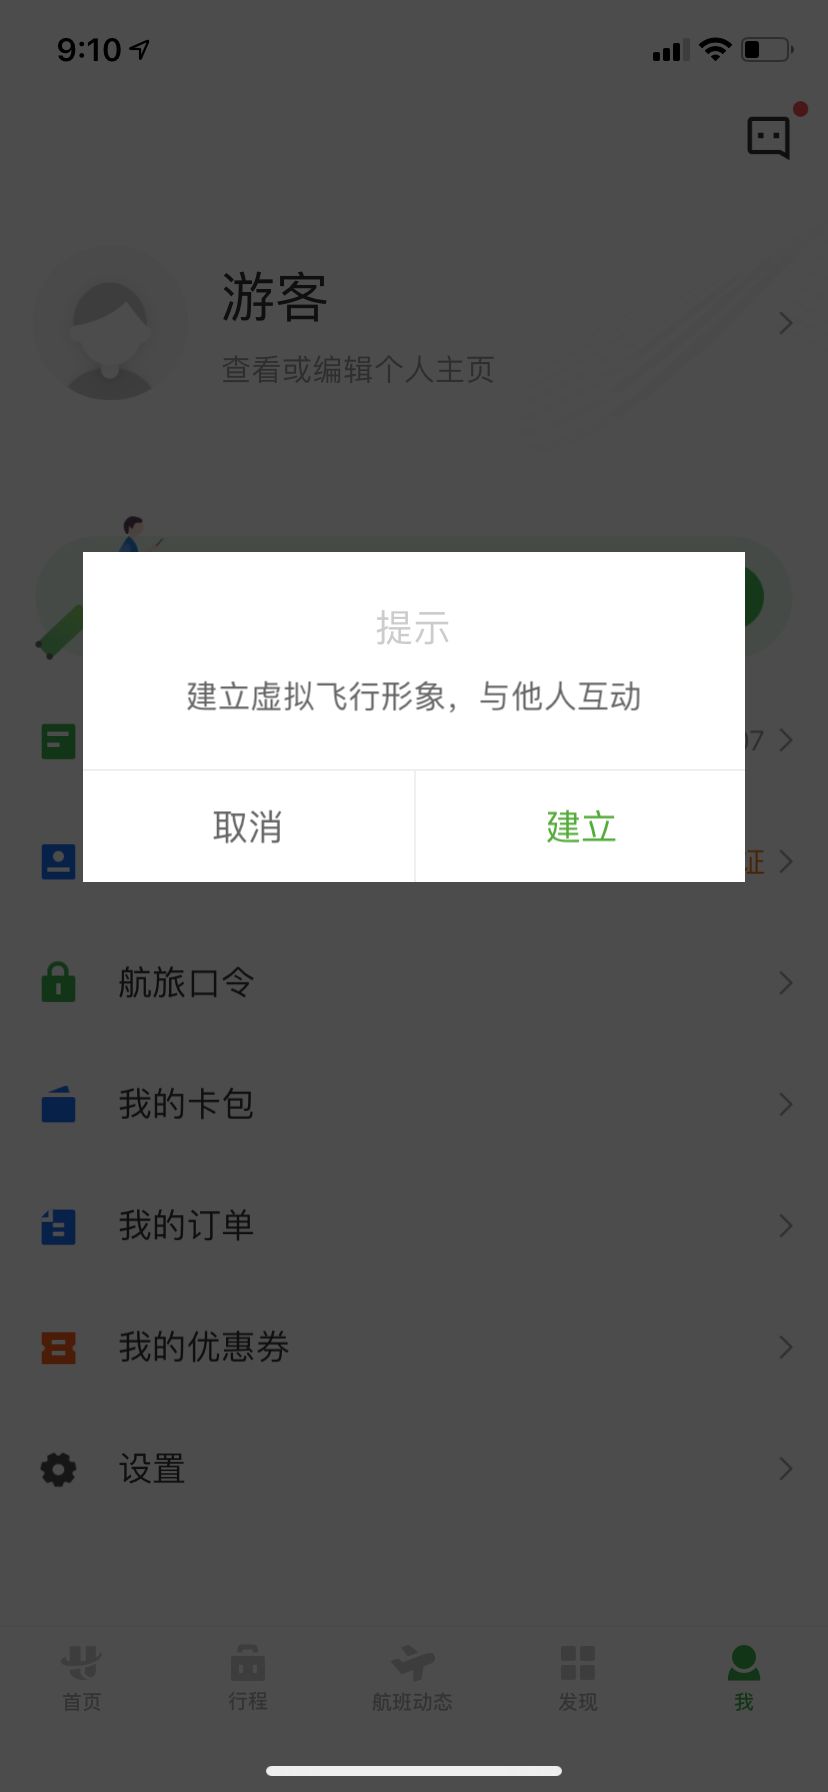 [飞机app聊天软件下载中文版苹果包]飞机app聊天软件下载中文版苹果包安装